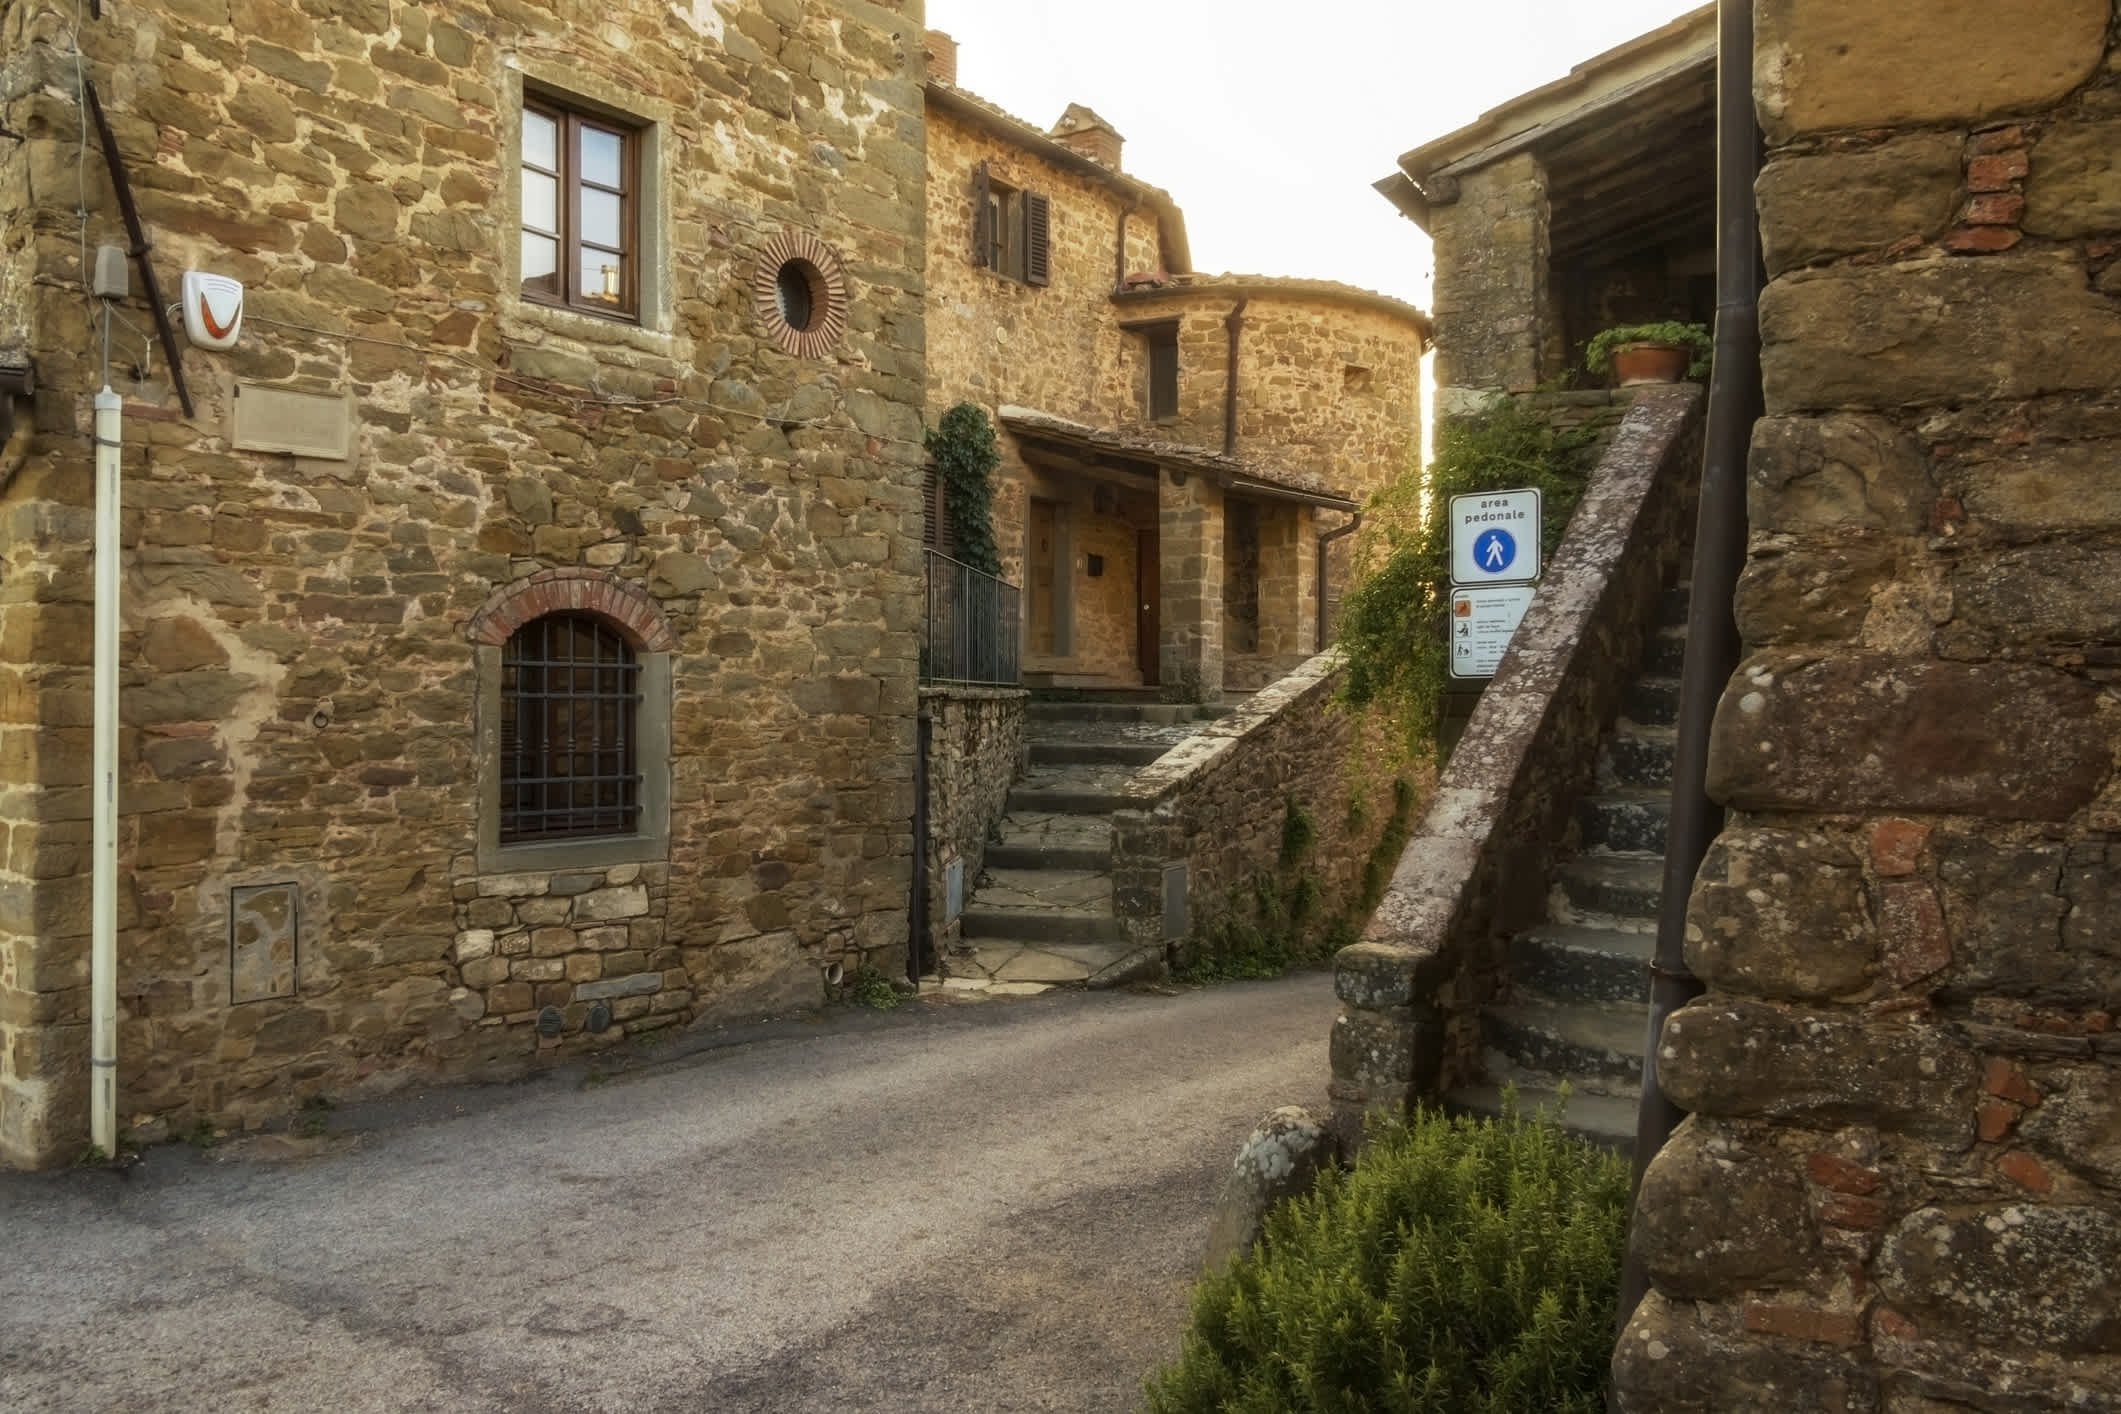 Mittelalterliches Dorf Volpaia in der Toskana, Italien.